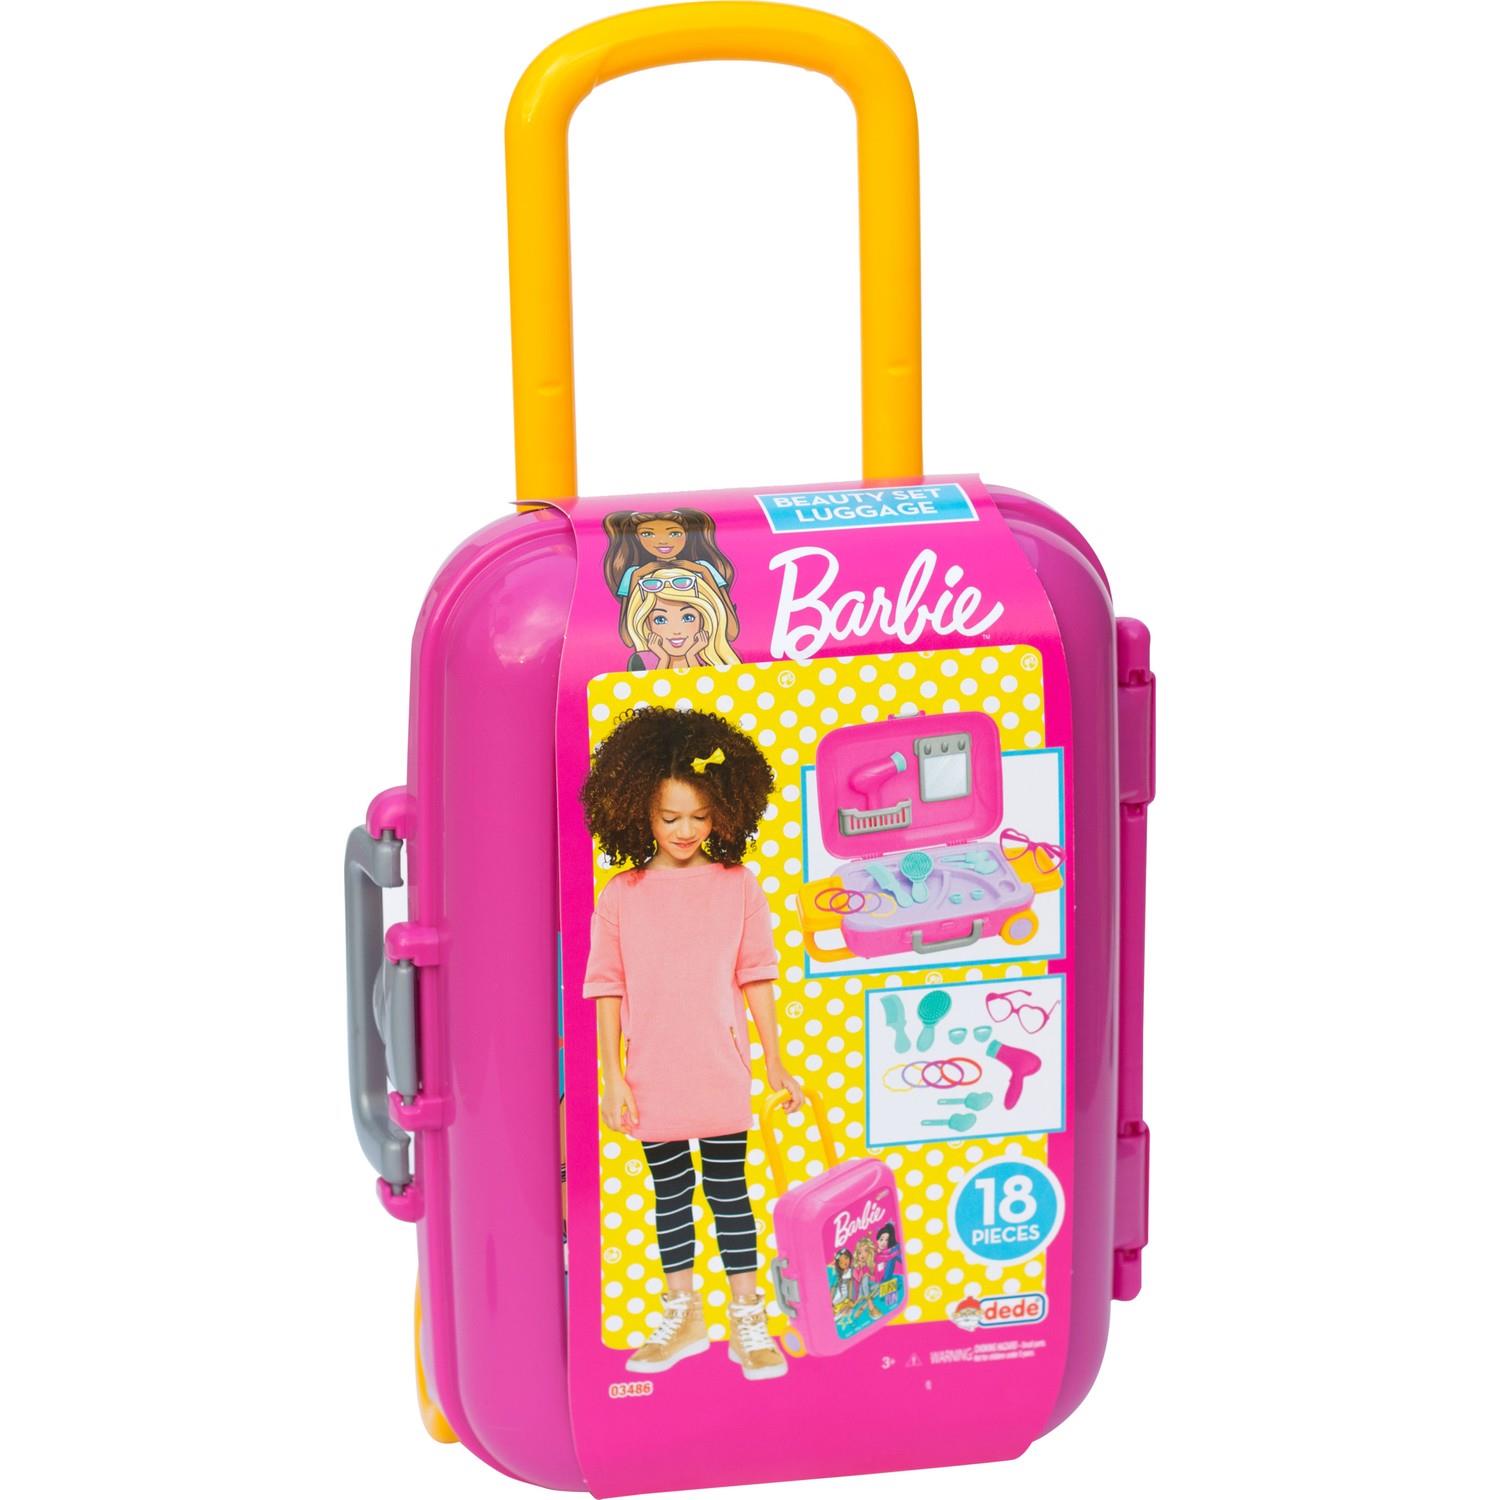 Barbie Güzellik Set Bavulum 3+ Yaş